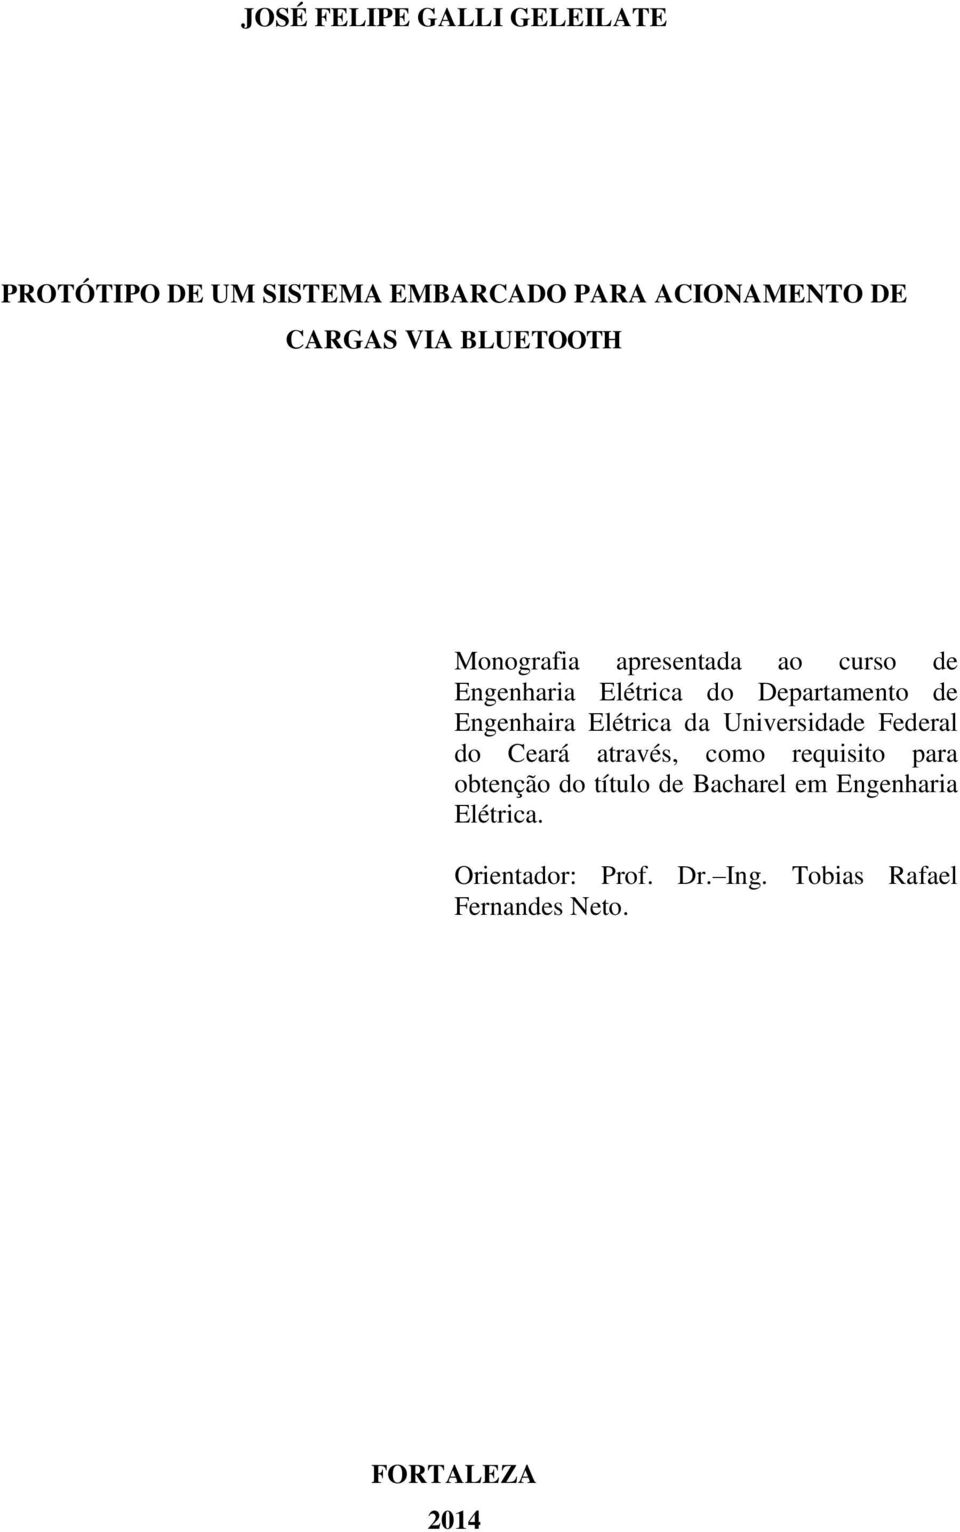 Elétrica da Universidade Federal do Ceará através, como requisito para obtenção do título de